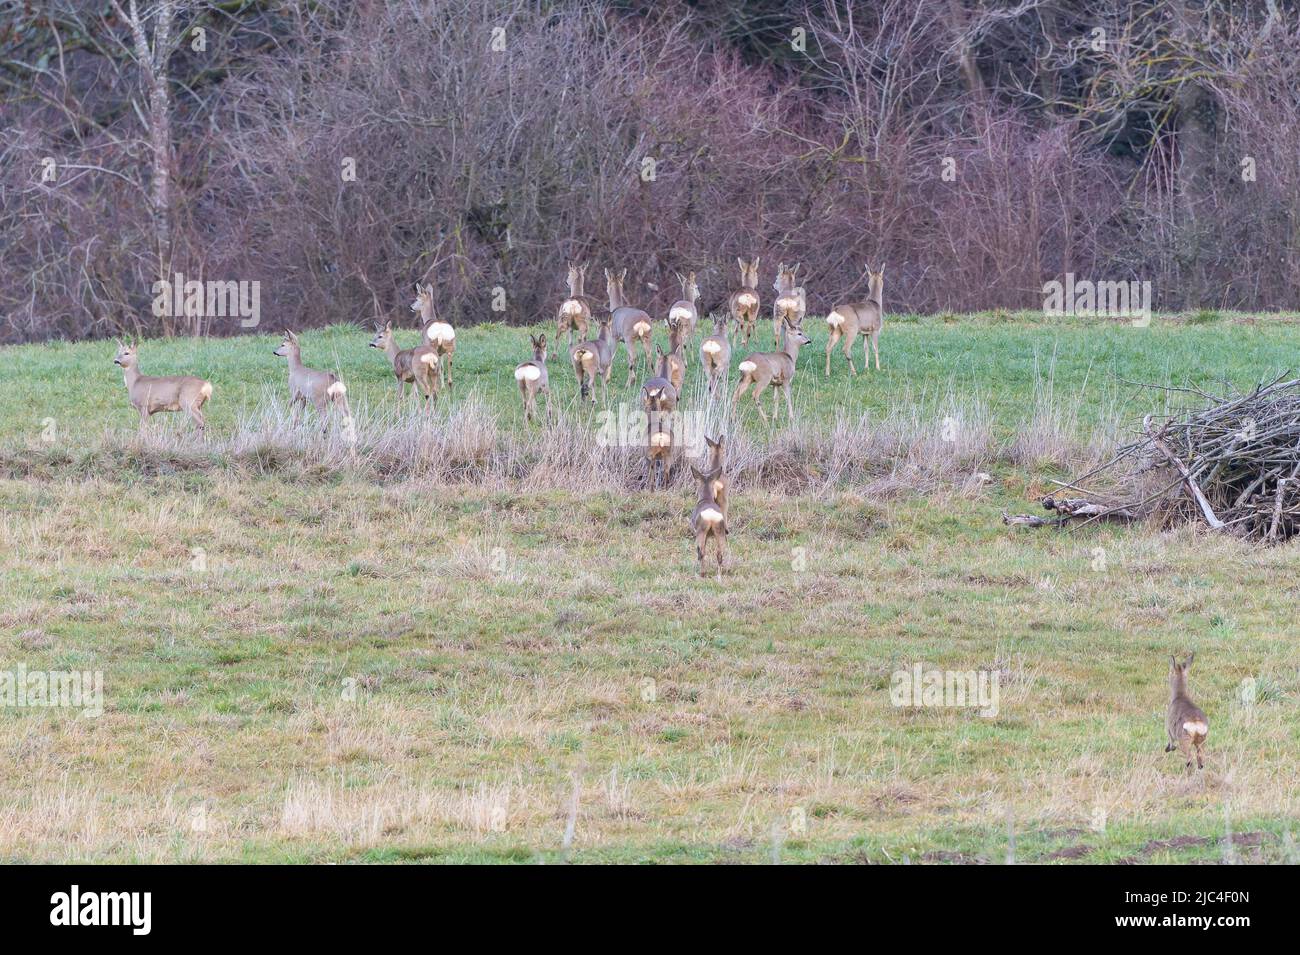 Cerf de Virginie, 20 cerfs de Virginie européens (Capranolus capranolus) sautant à travers un pré, canton d'Argau, Suisse Banque D'Images